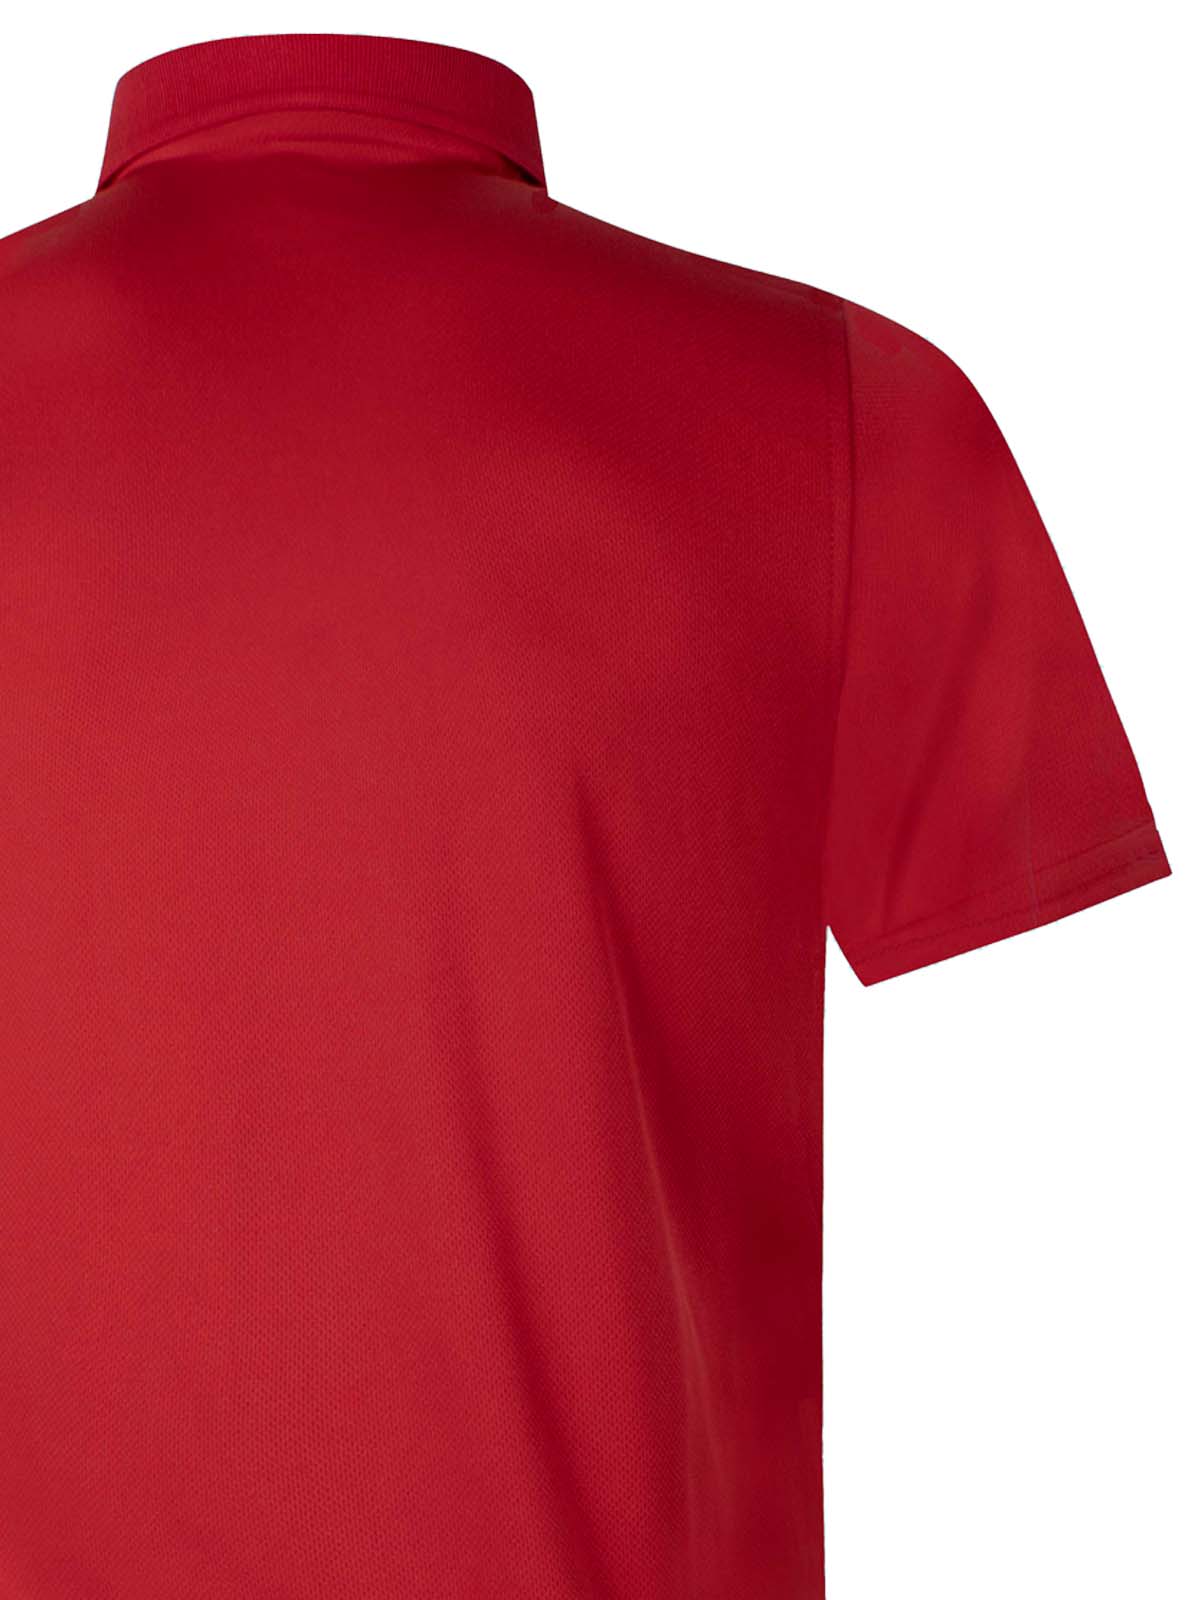 USA Polo Shirt Red